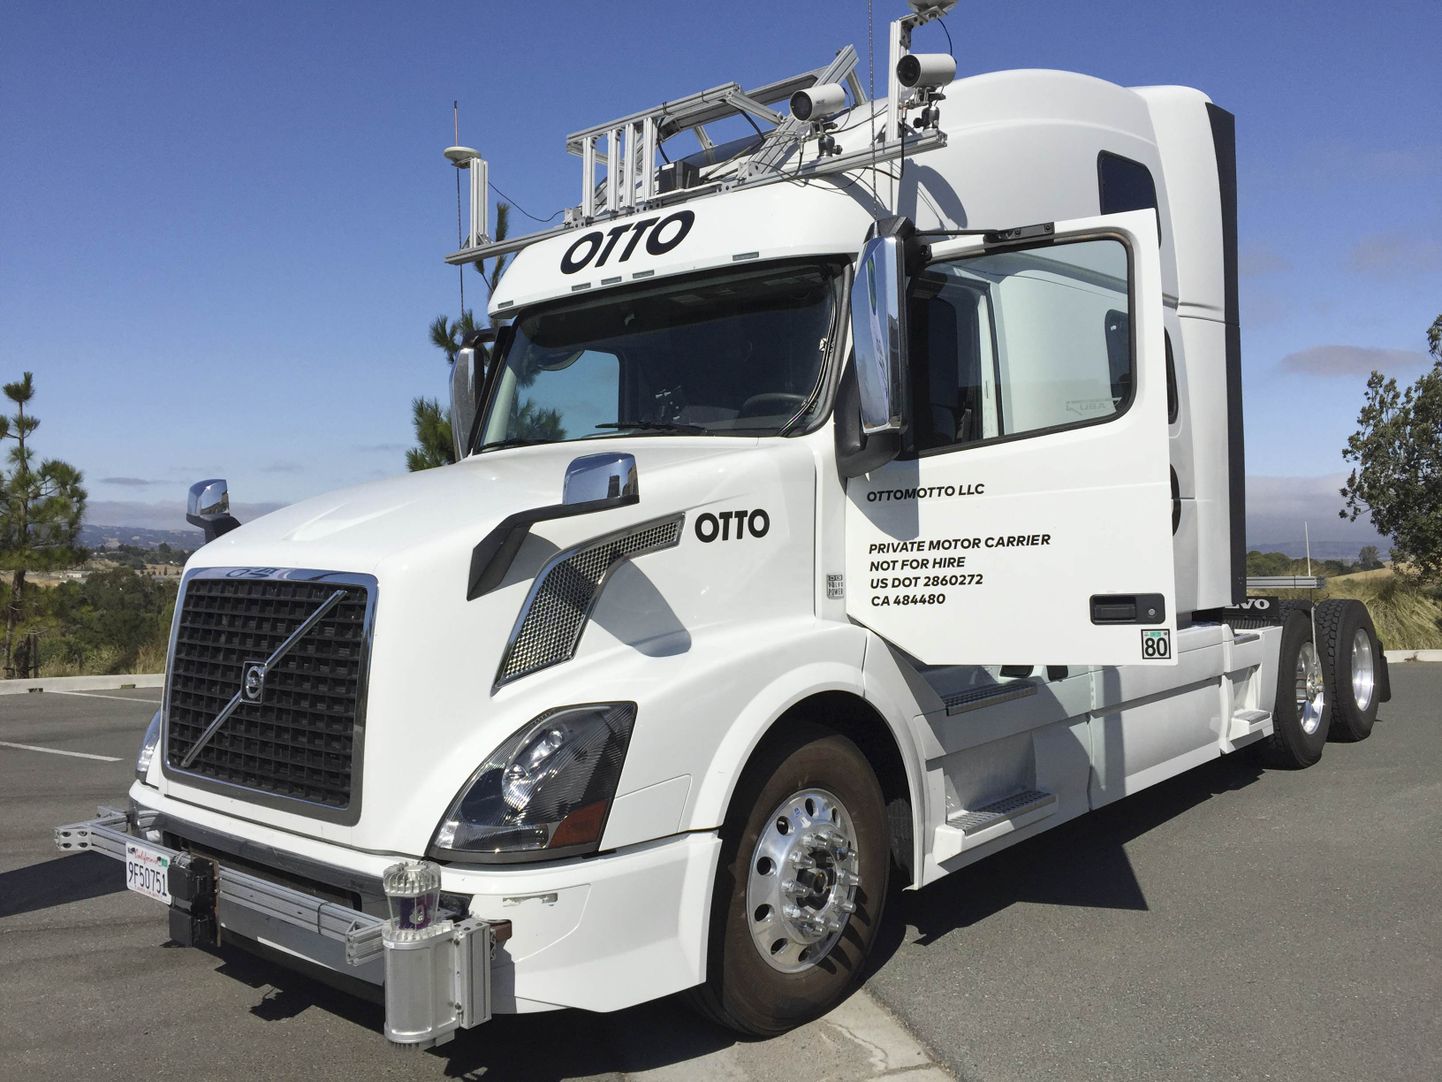 Uberile kuuluva kaubafirma Otto isejuhtiv veoauto, mis suutis ilma juhita läbida ligi 200 kilomeetrit.